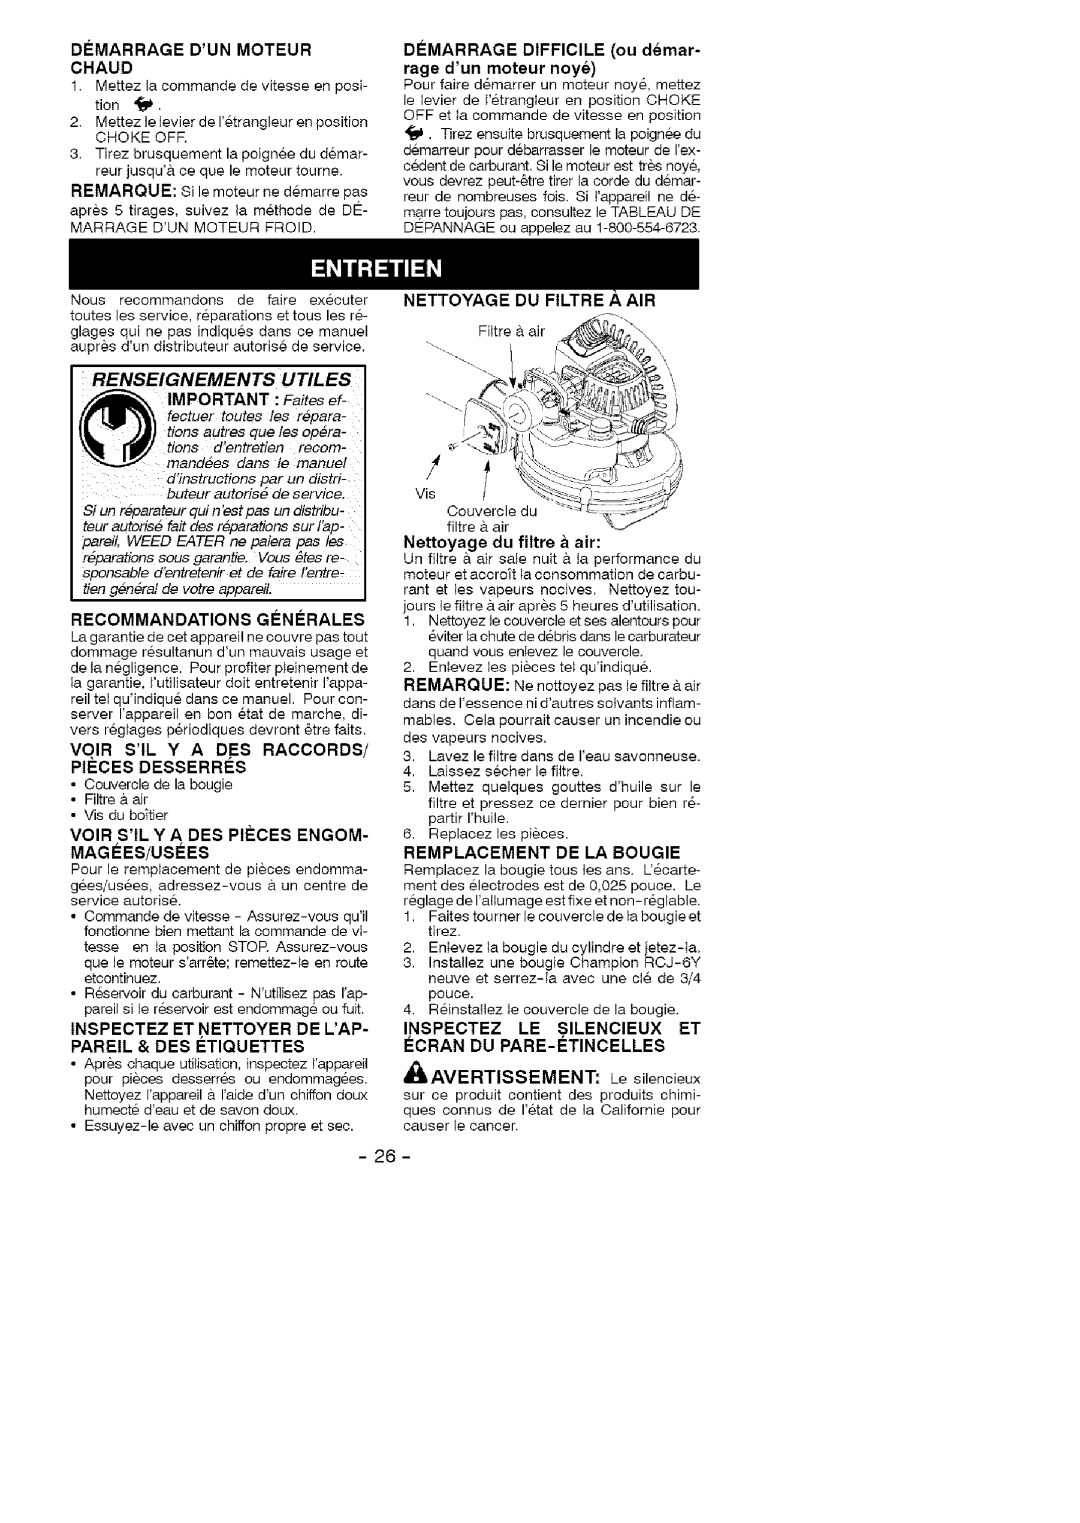 Weed Eater FL1500 LE H, 358.79489 Renseignements Utiles, Nettoyage Du Filtre A Air, Filtre & air, D#Marrage Dun Moteur 